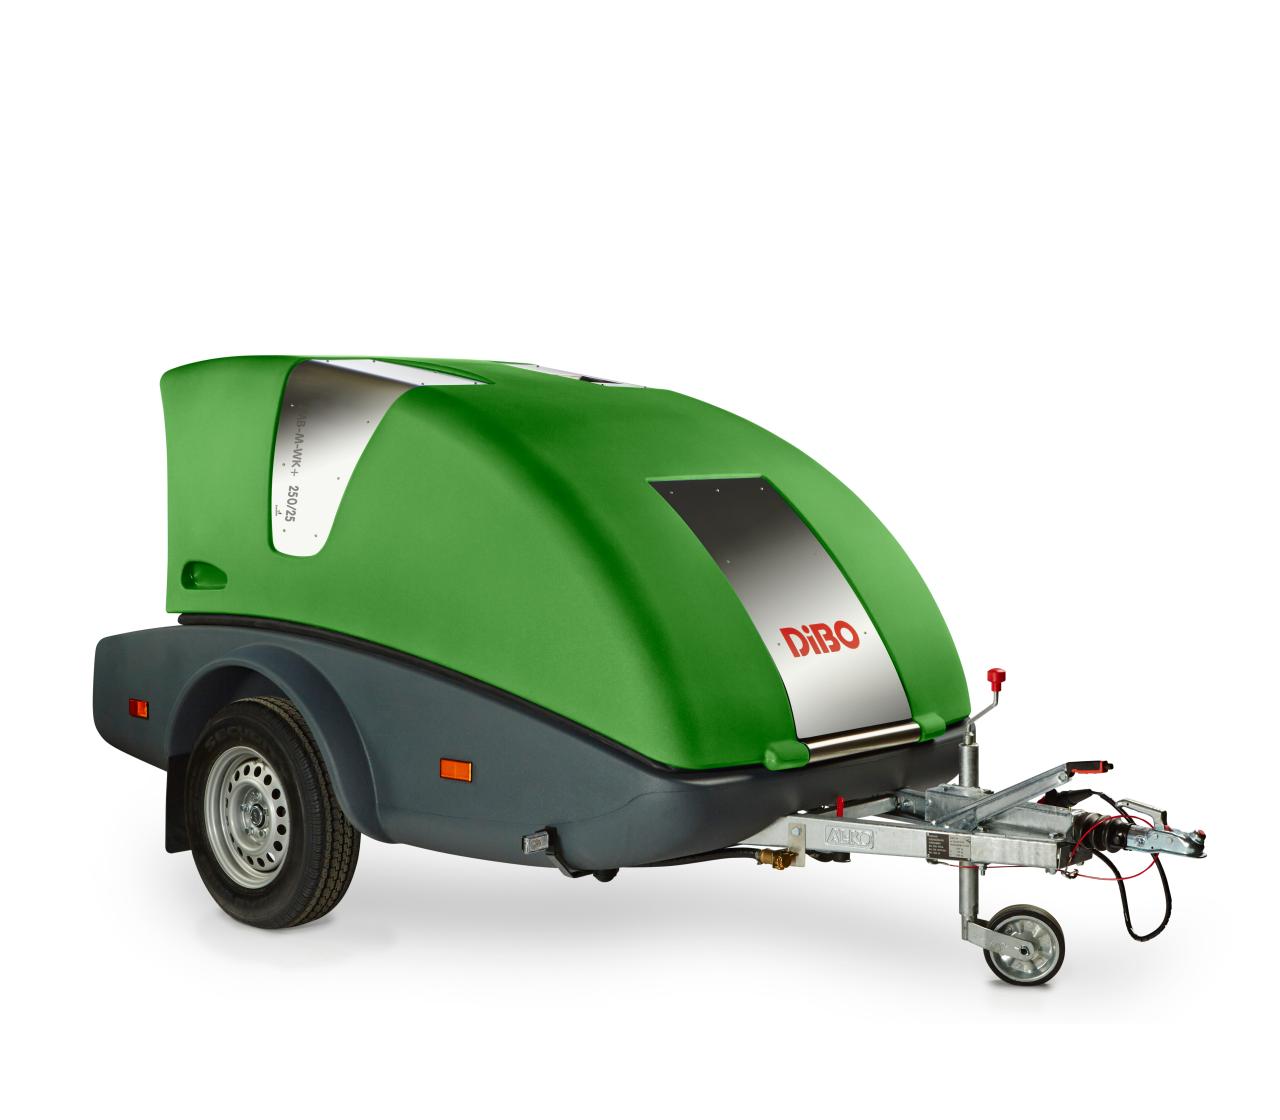 DiBO JMB-M-WK+  milieuvriendelijke mos & onkruidbestrijder op trailer uitgerust met de meest moderne & groene technologieën